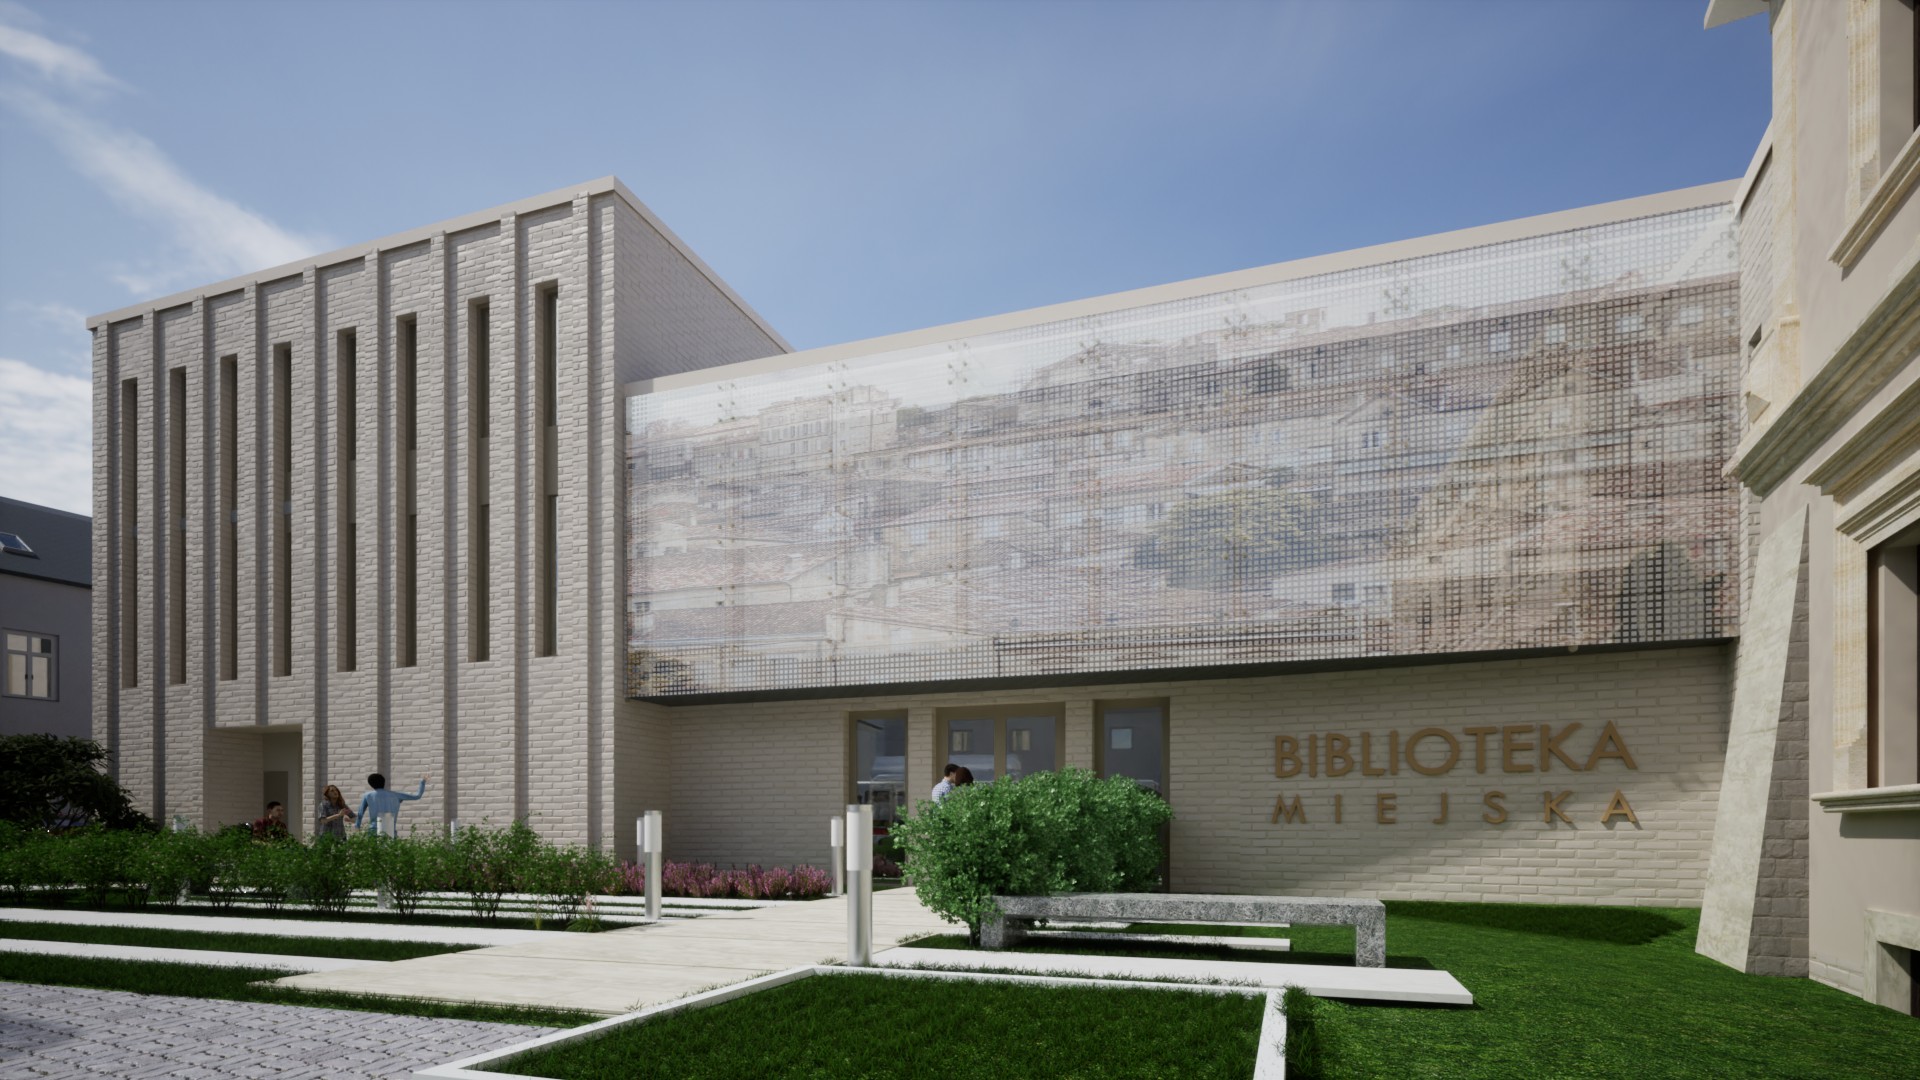 Koncepcja rozbudowy Sądeckiej Biblioteki Publicznej